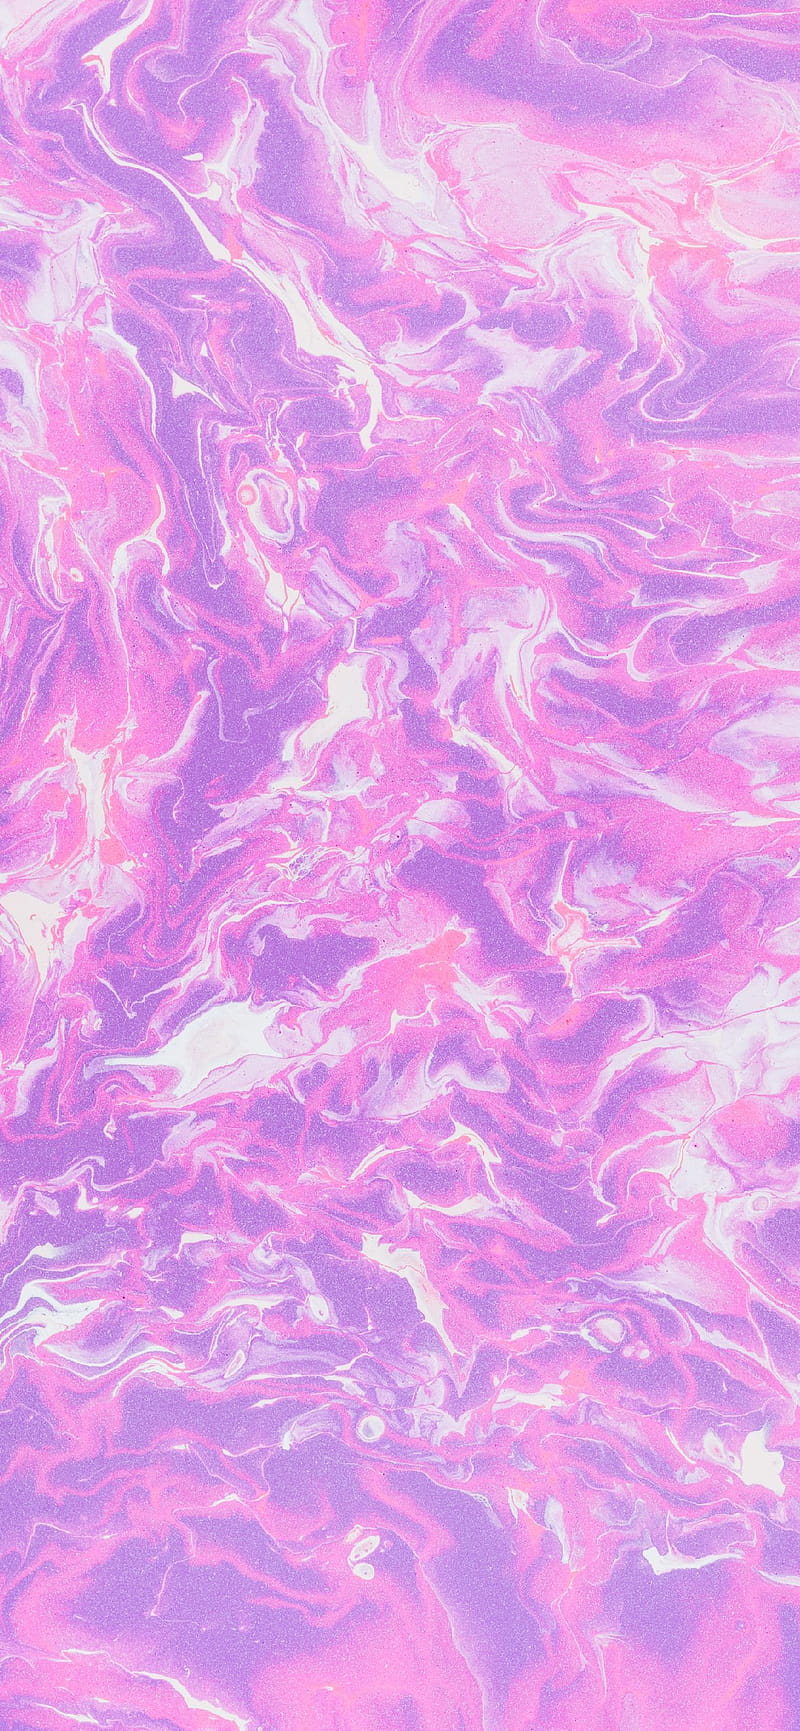 aesthetic wallpapers on Twitter Purple  purple aesthetic wallpaper  Wallpapers httpstcoztpakuS5Pd  Twitter